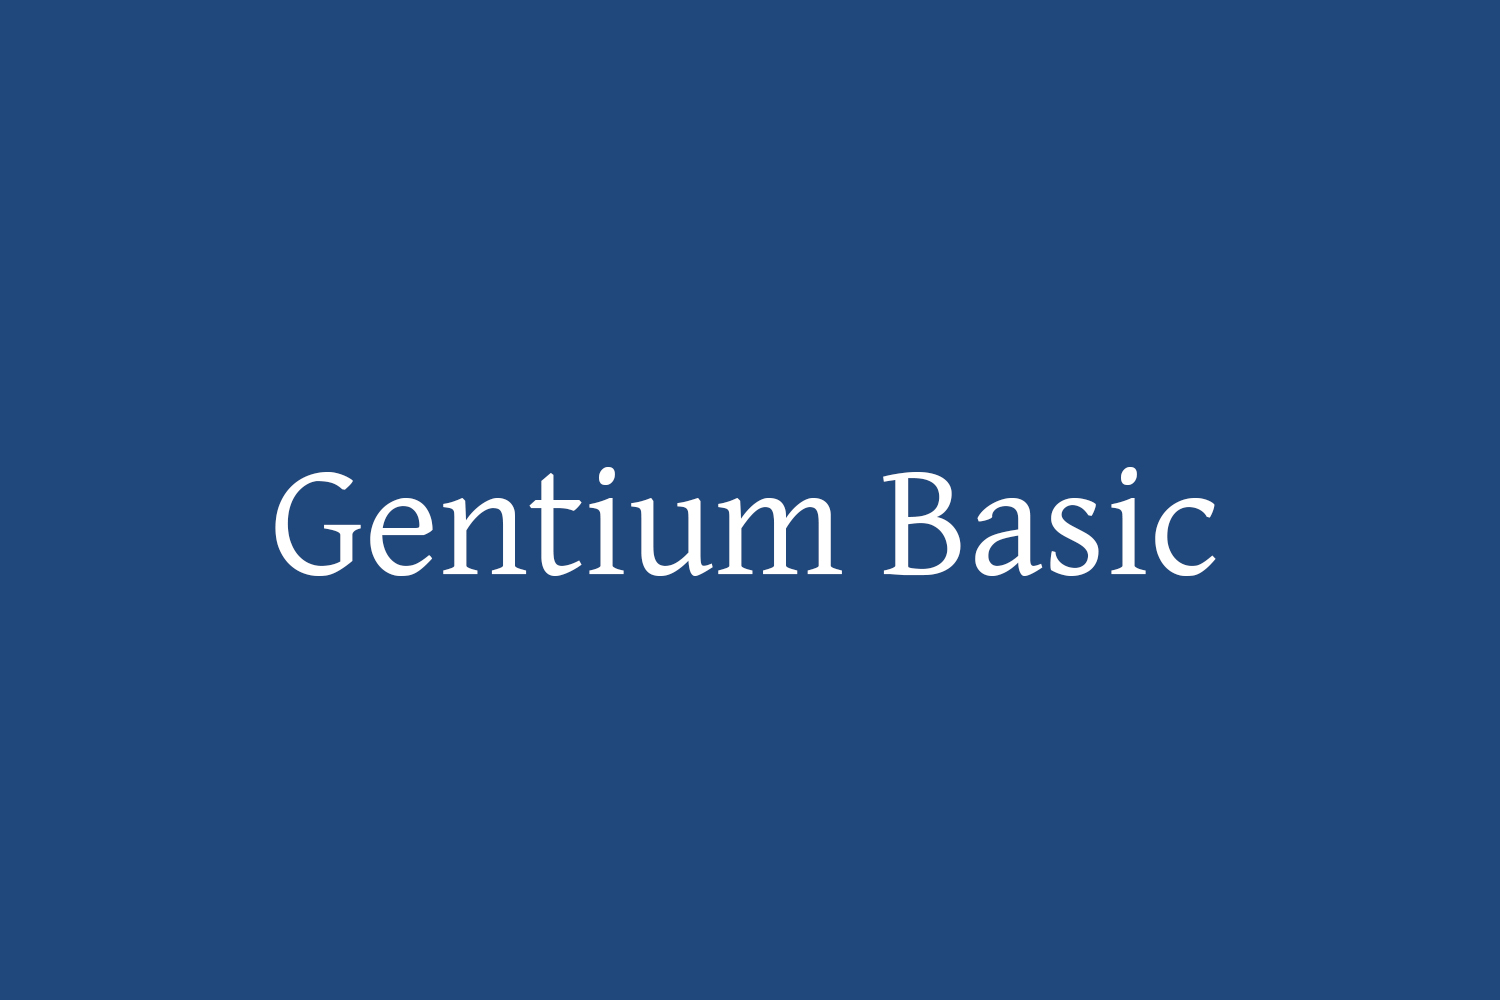 Gentium Basic